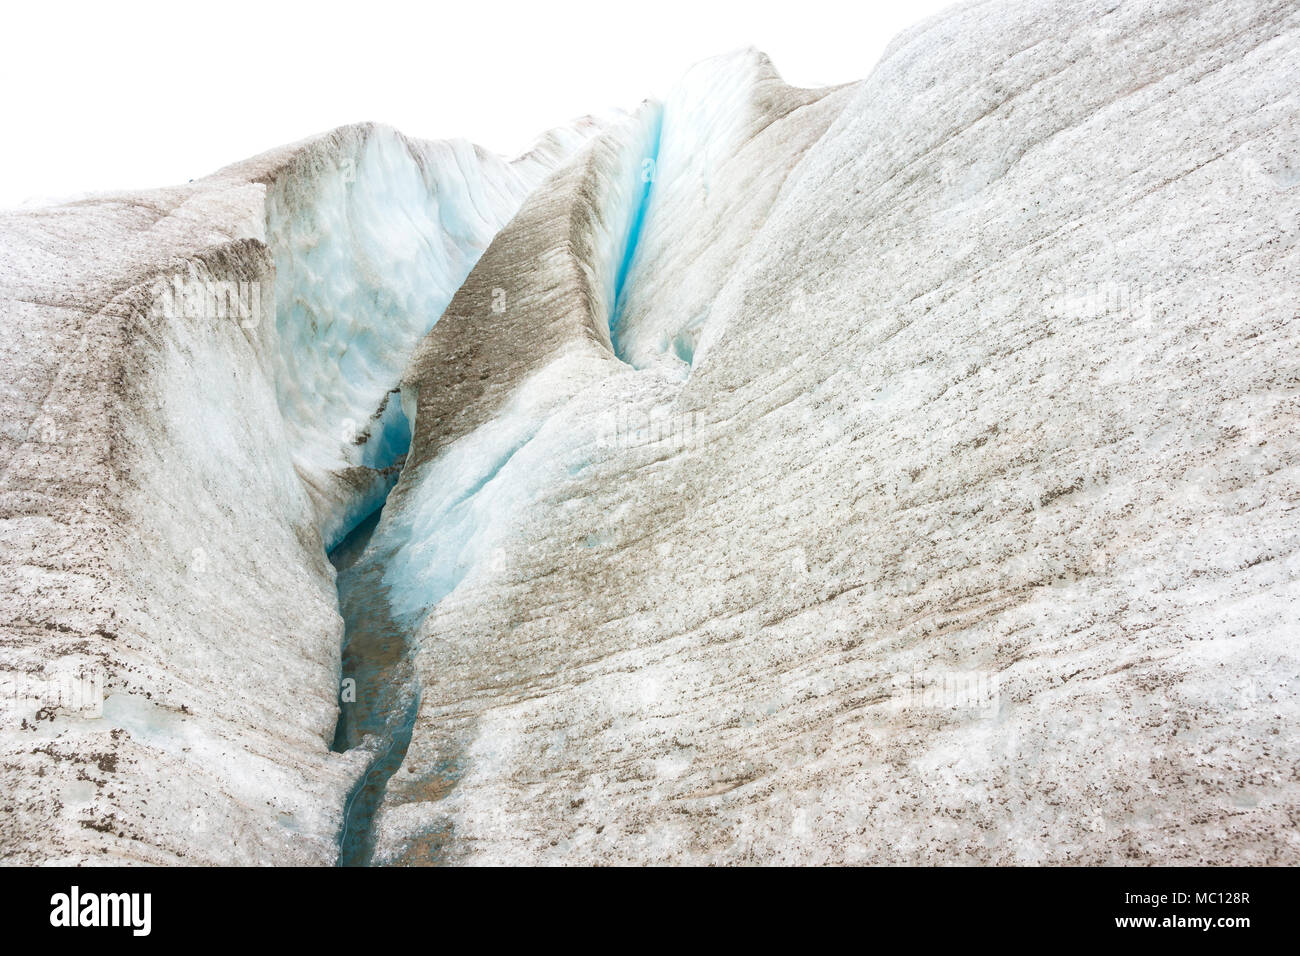 Trekking adventure on Lemon Glacier, Juneau Icefield, Juneau, Alaska, USA Stock Photo